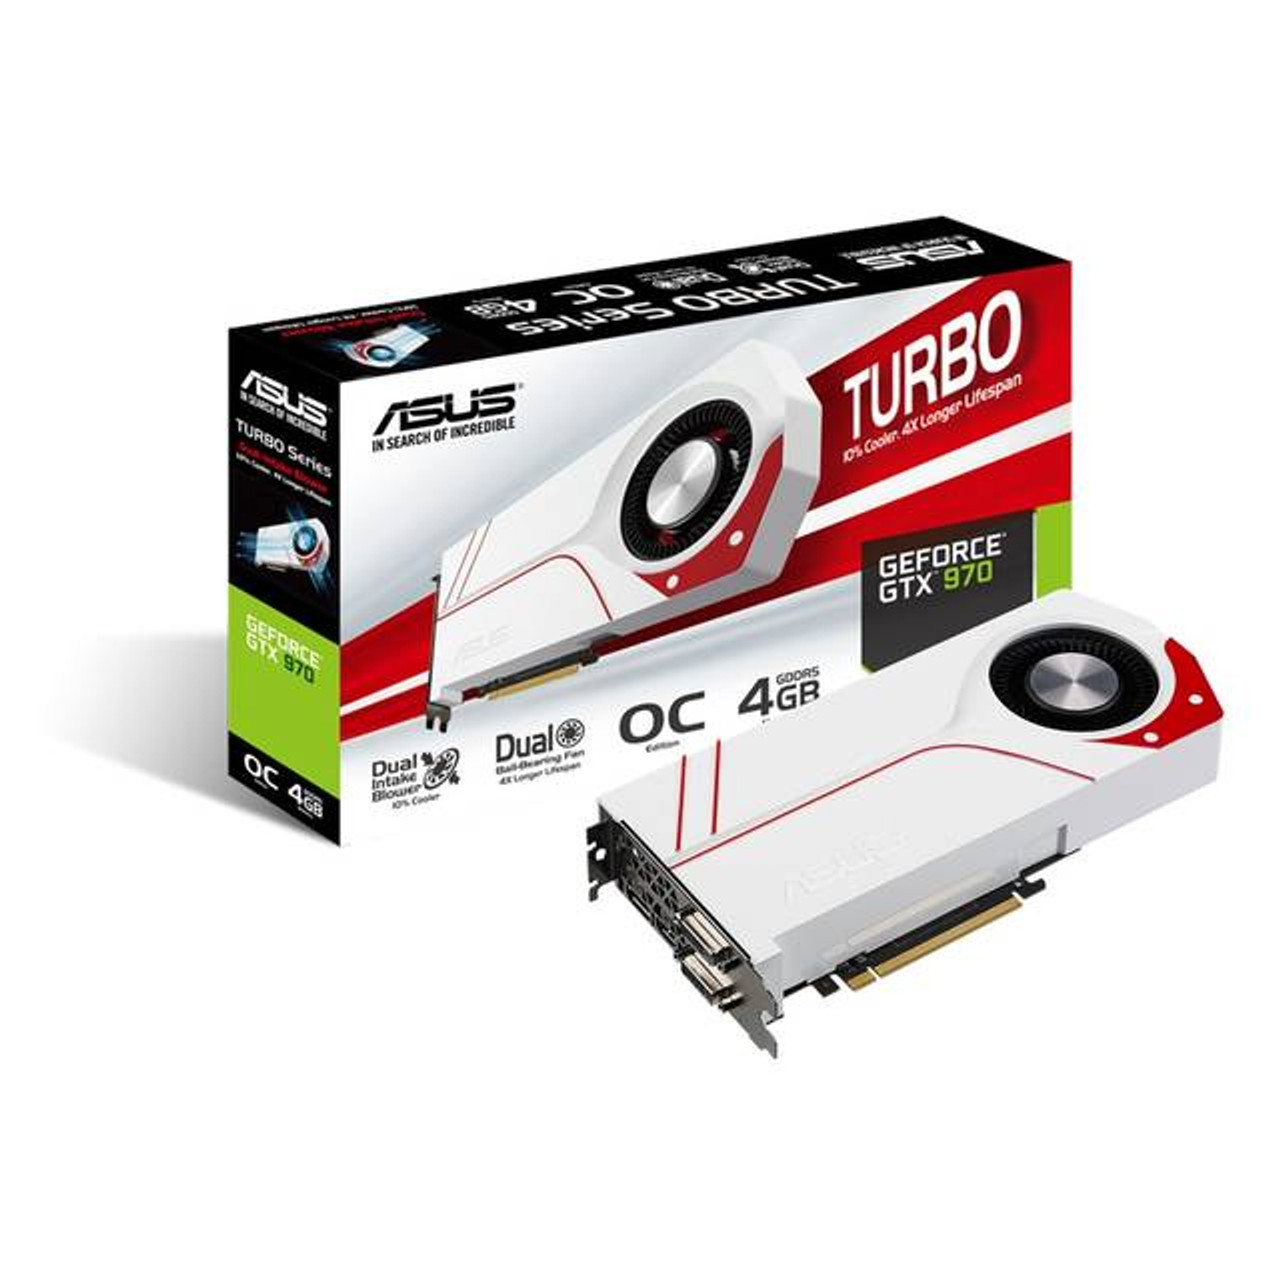 Asus NVIDIA GeForce GTX 970 OC 4GB GDDR5 2DVI/HDMI/DisplayPort PCI-Express Video Card